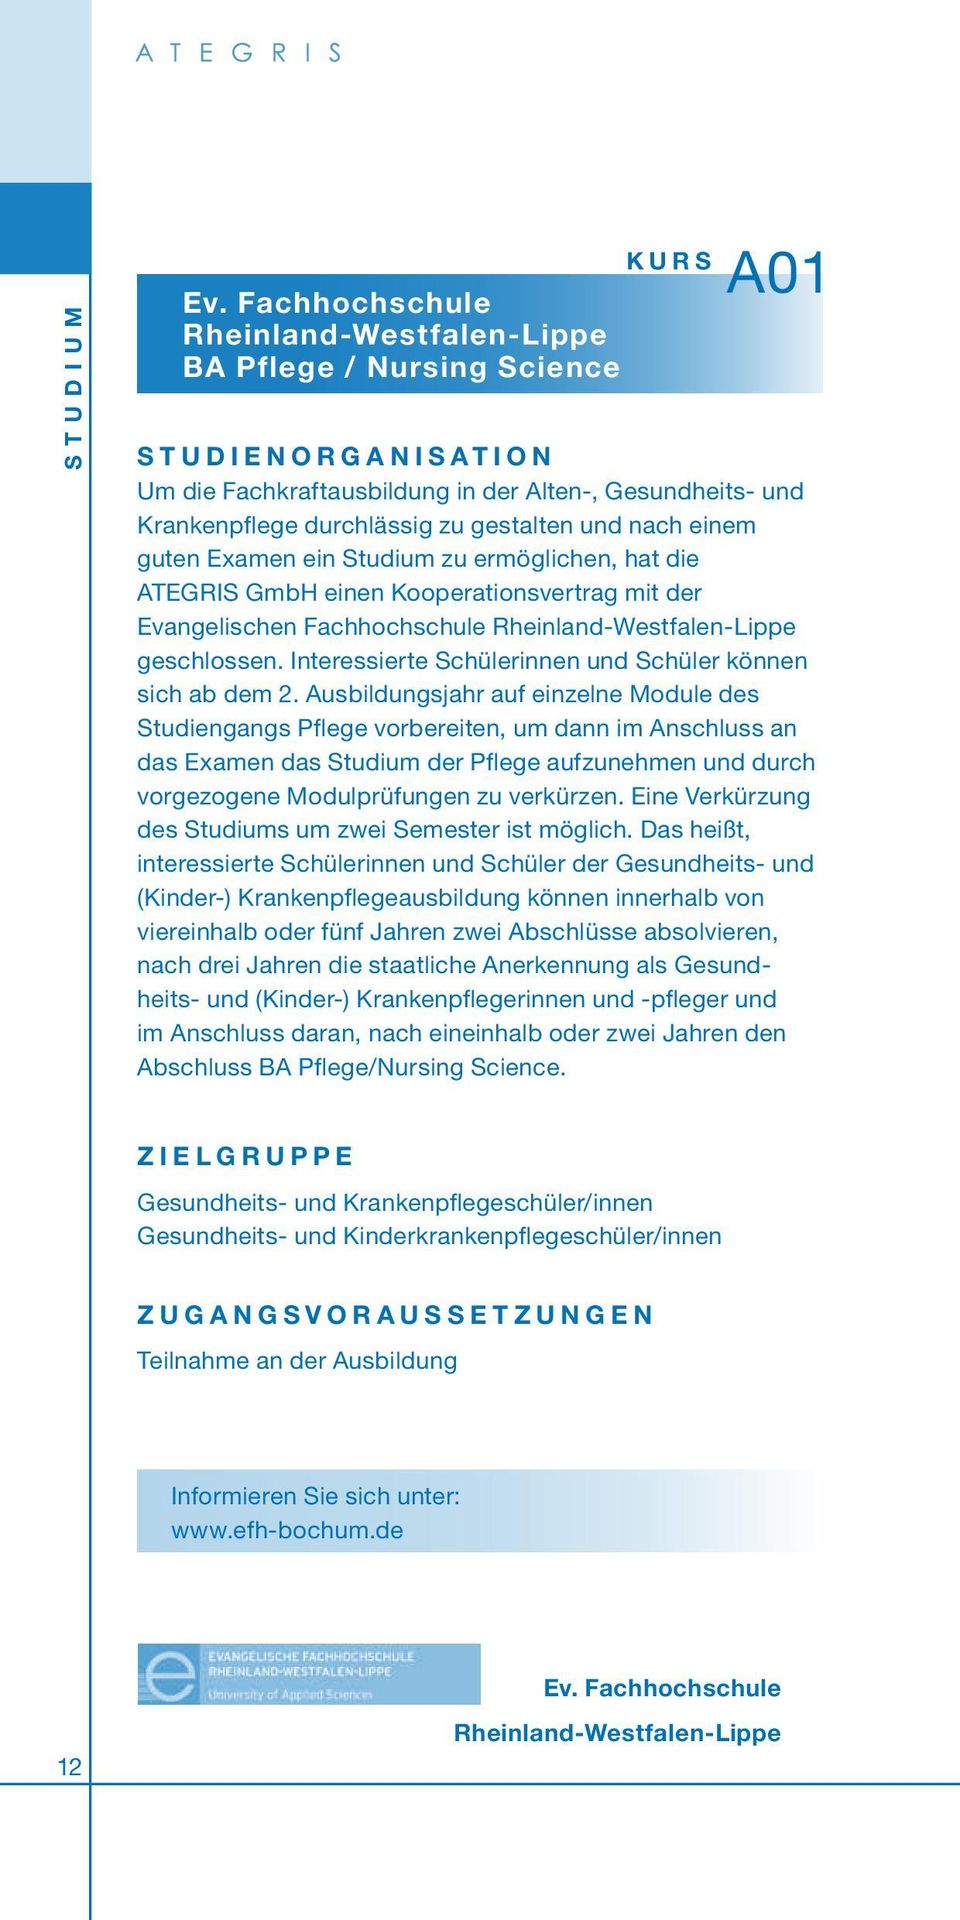 einem guten Examen ein Studium zu ermöglichen, hat die ATEGRIS GmbH einen Kooperationsvertrag mit der Evangelischen Fachhochschule Rheinland-Westfalen-Lippe geschlossen.